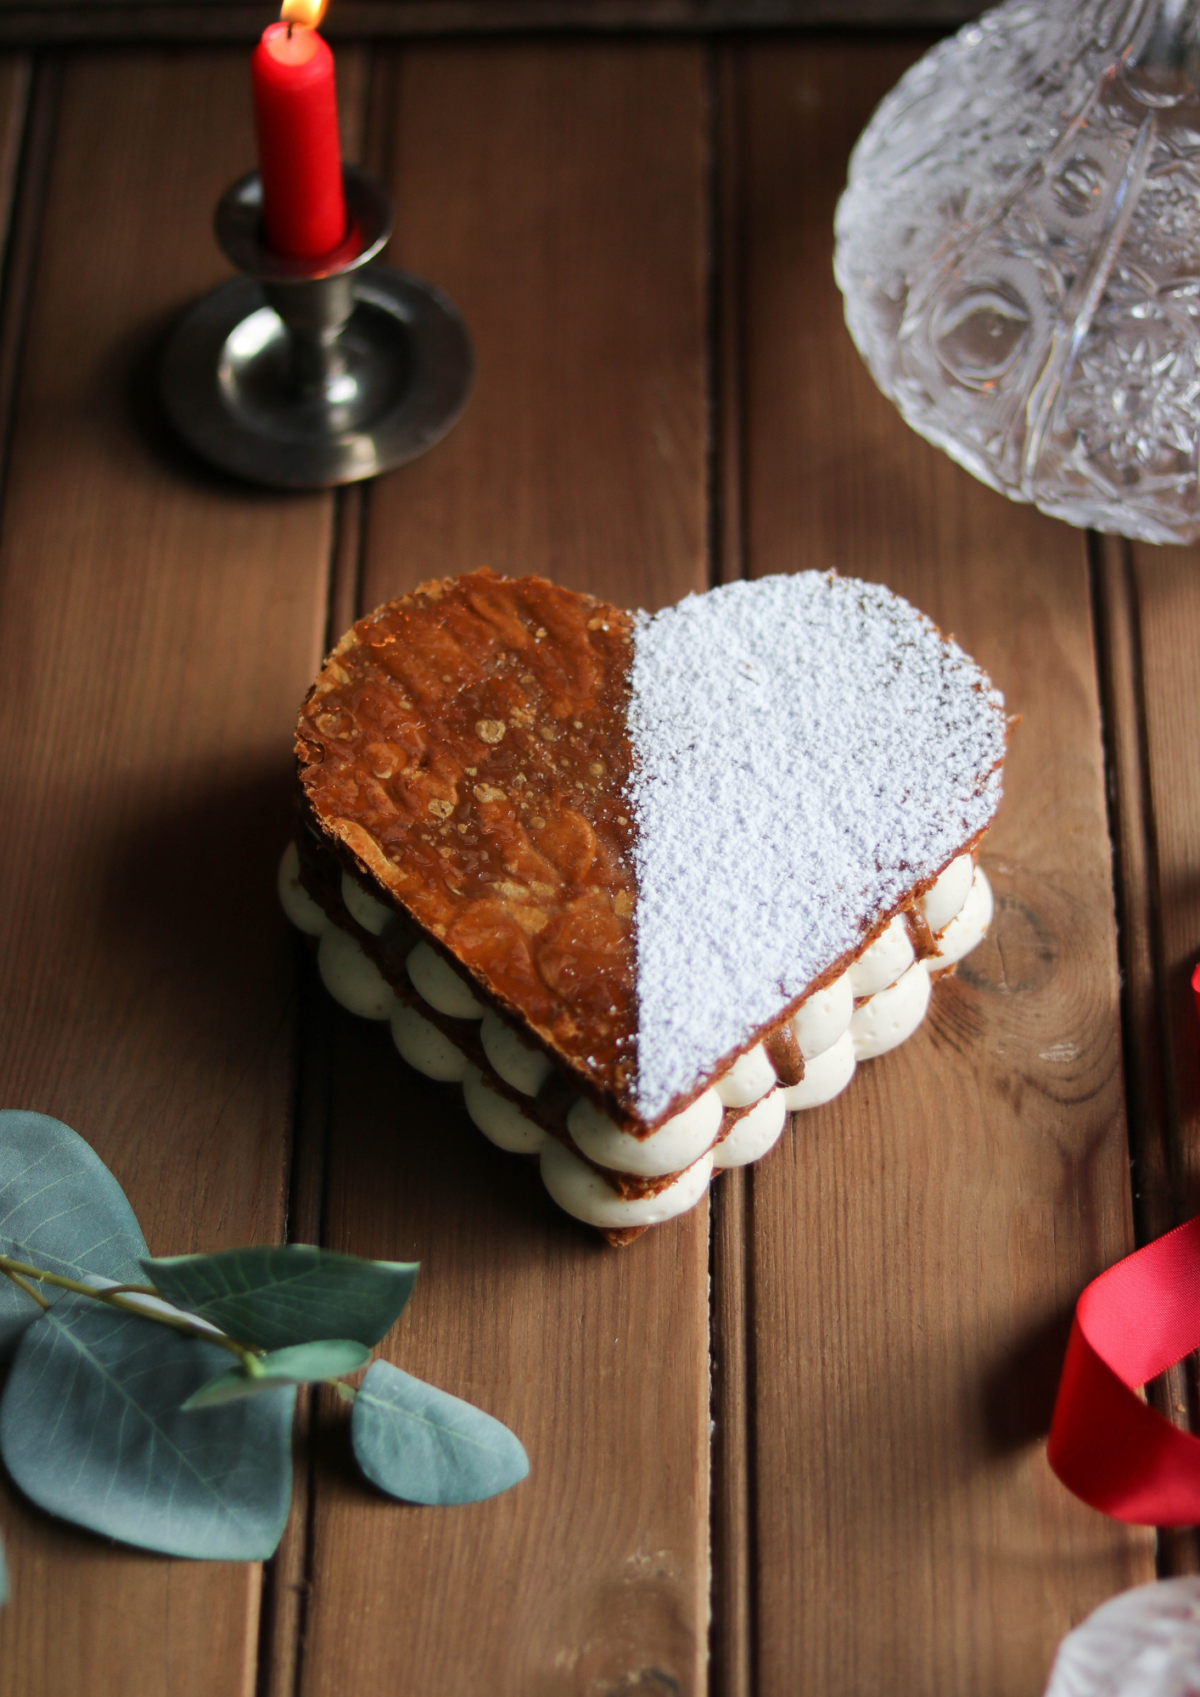 Un mille-feuilles qui a la forme d'un coeur et composé d'un feuilletage, d'une crème diplomate et d'un praliné amande/vanille